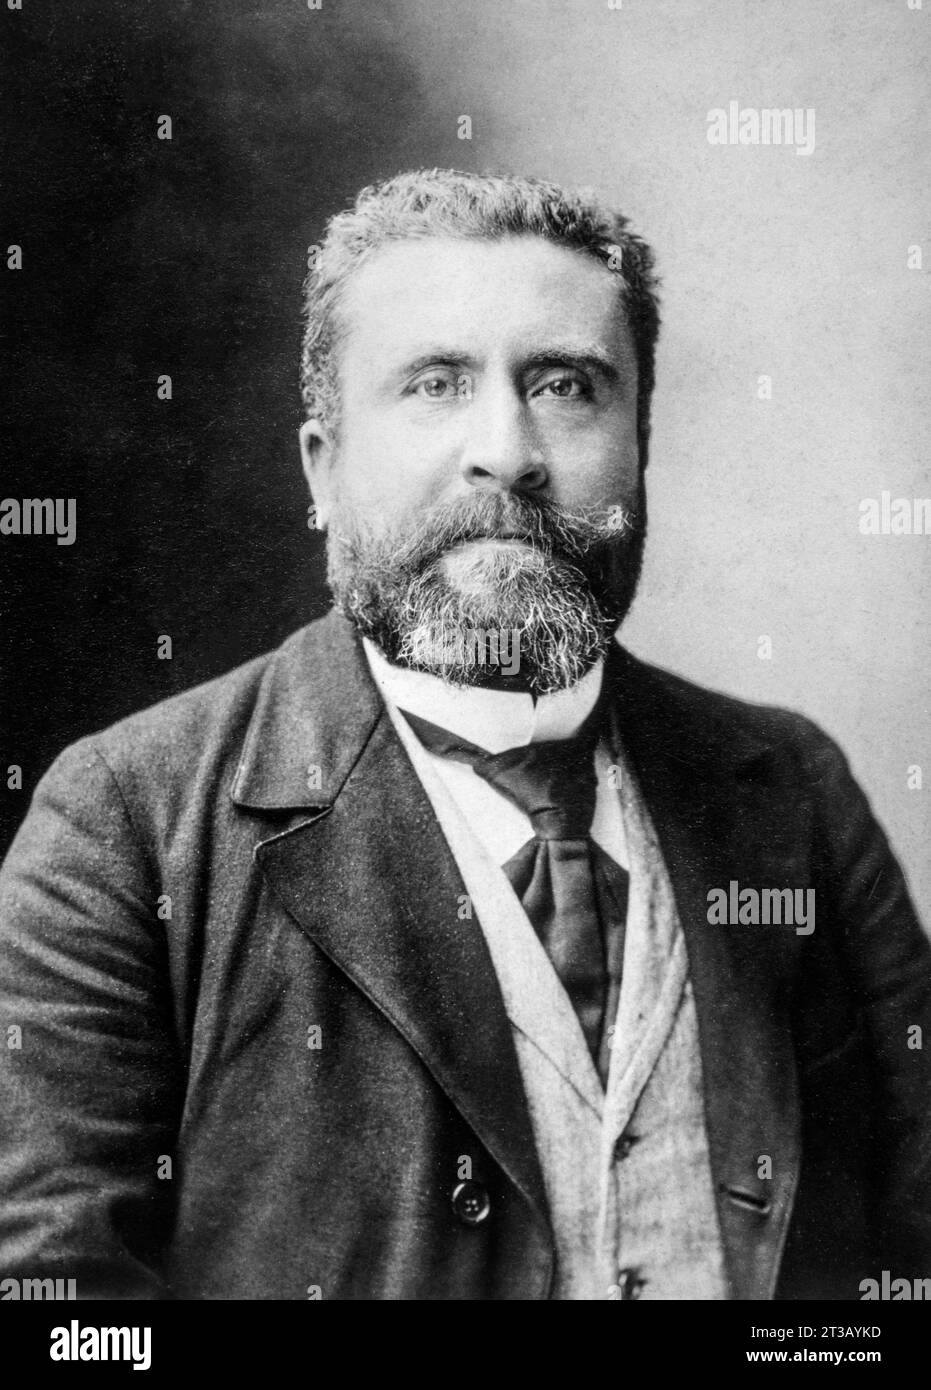 Fotografie, Porträt von Jean Jaures (1859 - 1914) Direktor der Zeitung L'Humanité Stockfoto